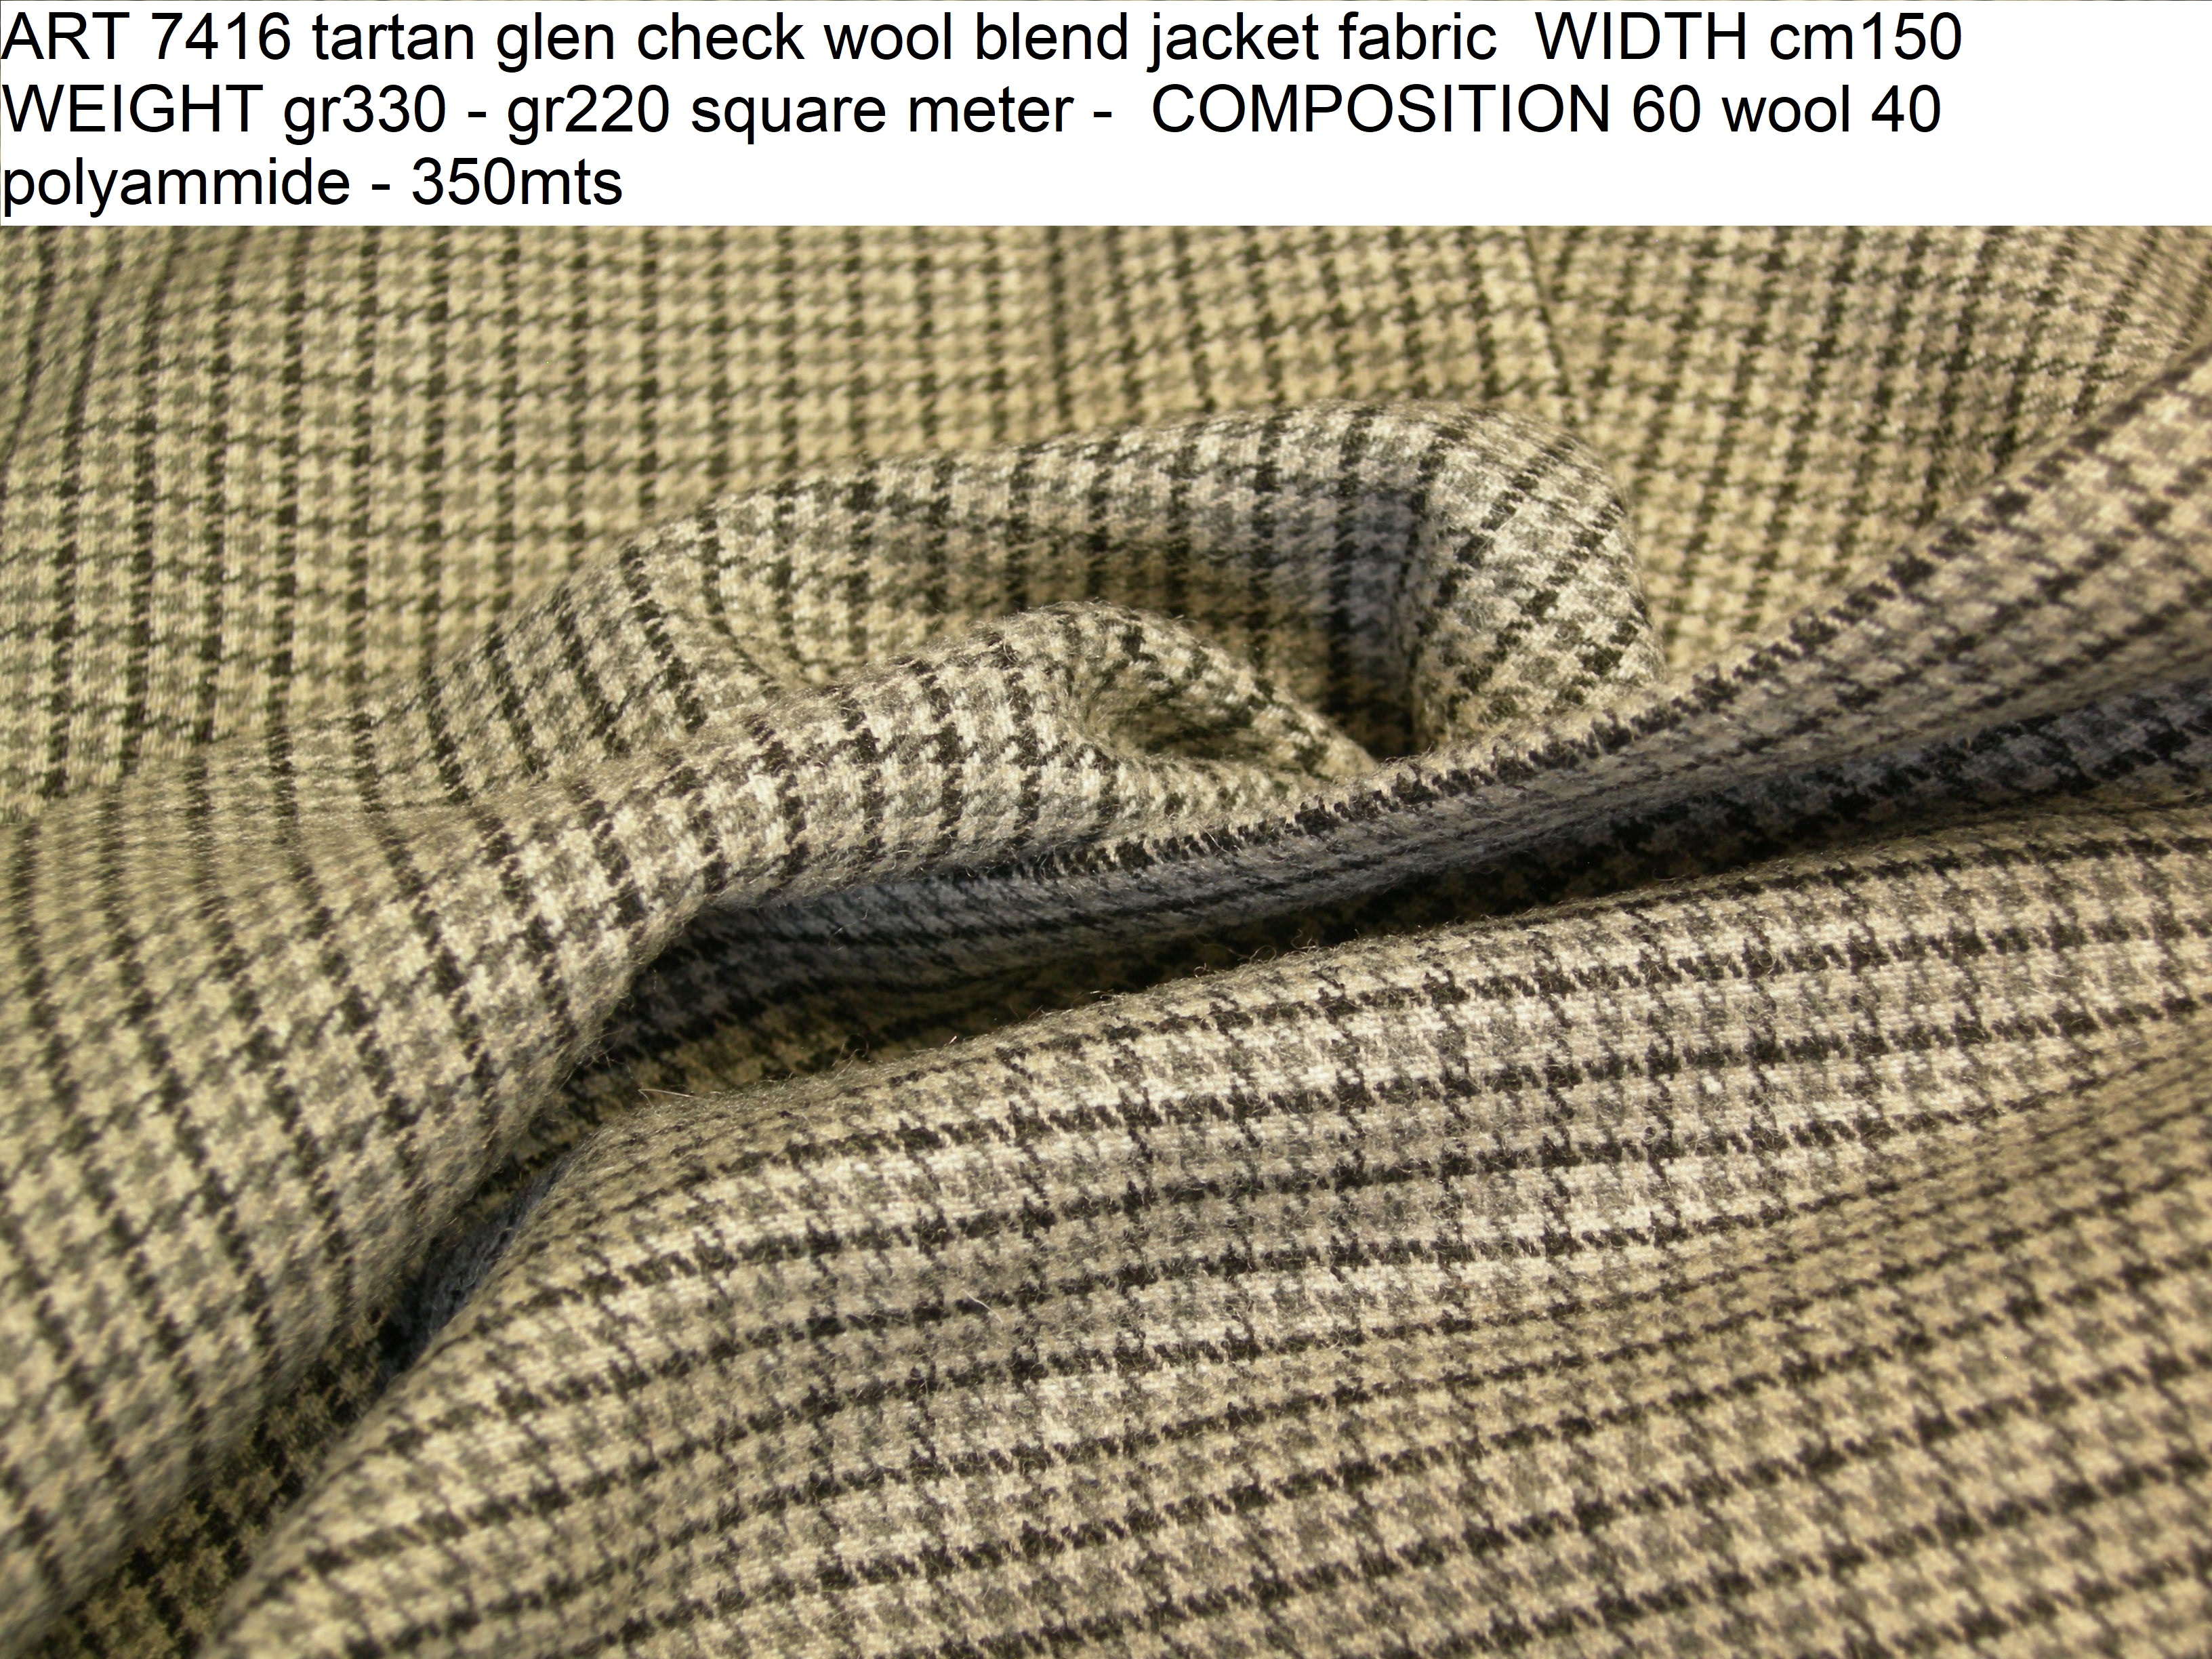 ART 7416 tartan glen check wool blend jacket fabric WIDTH cm150 WEIGHT gr330 - gr220 square meter - COMPOSITION 60 wool 40 polyammide - 350mts